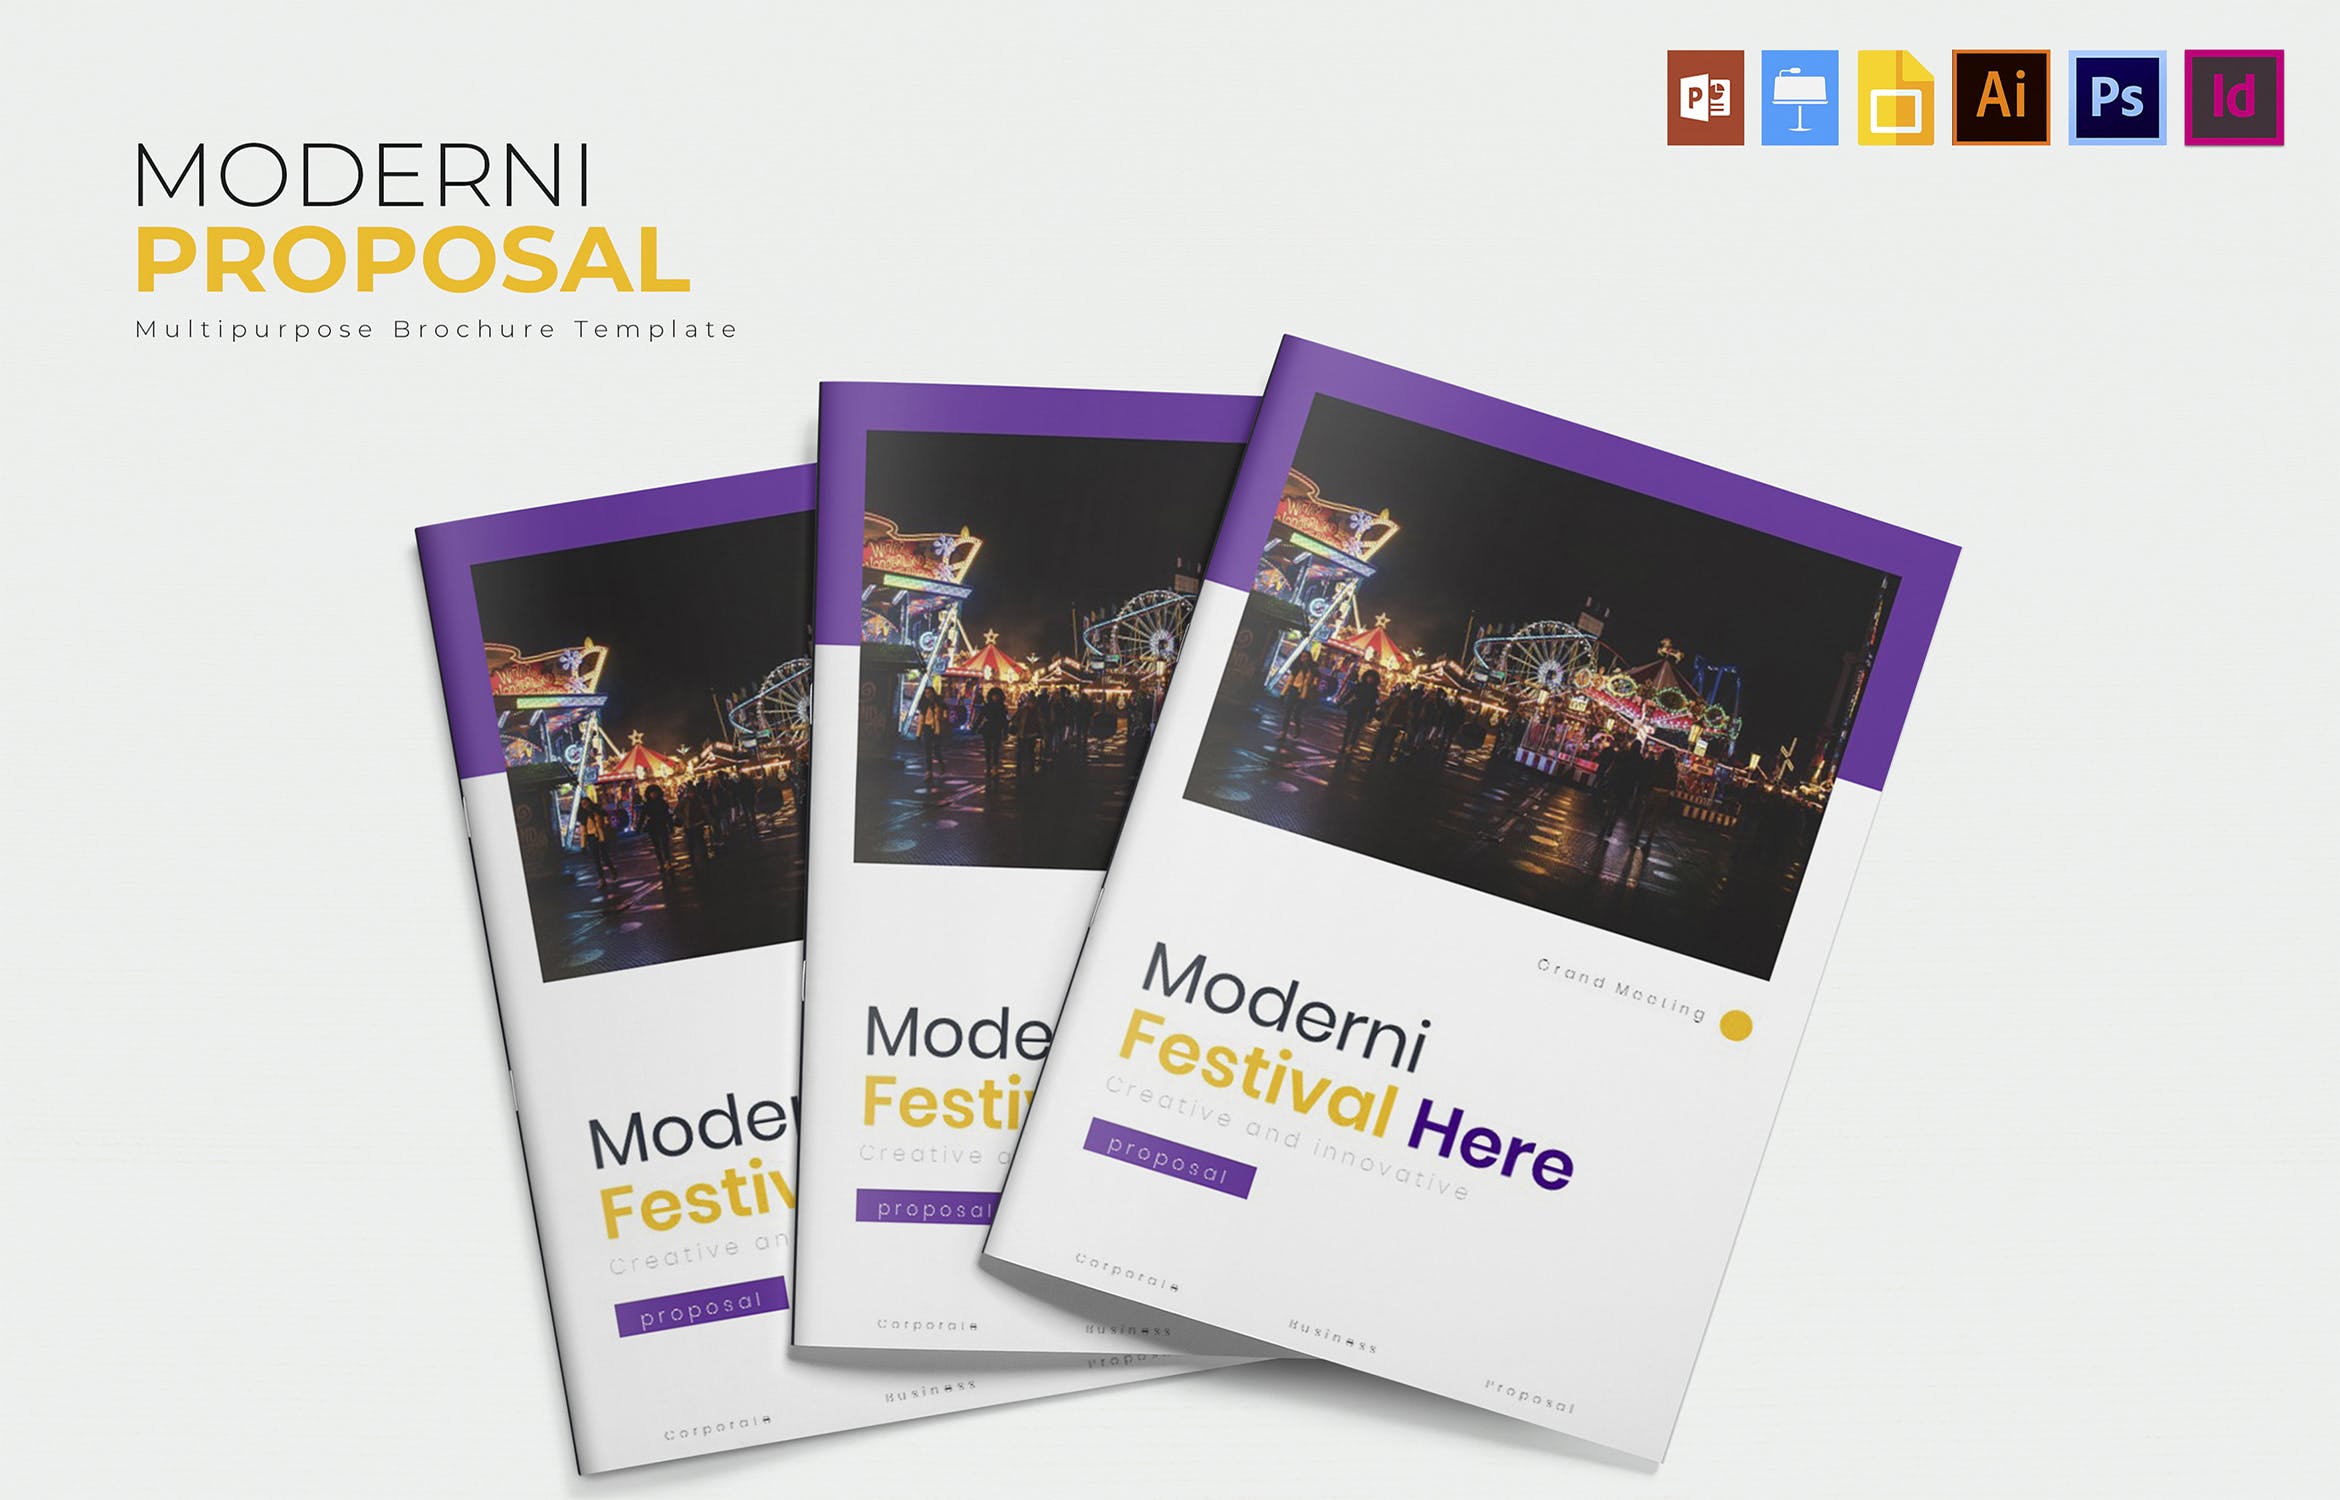 现代版式设计商业提案模板 Moderni Festival | Brochure Template插图(1)